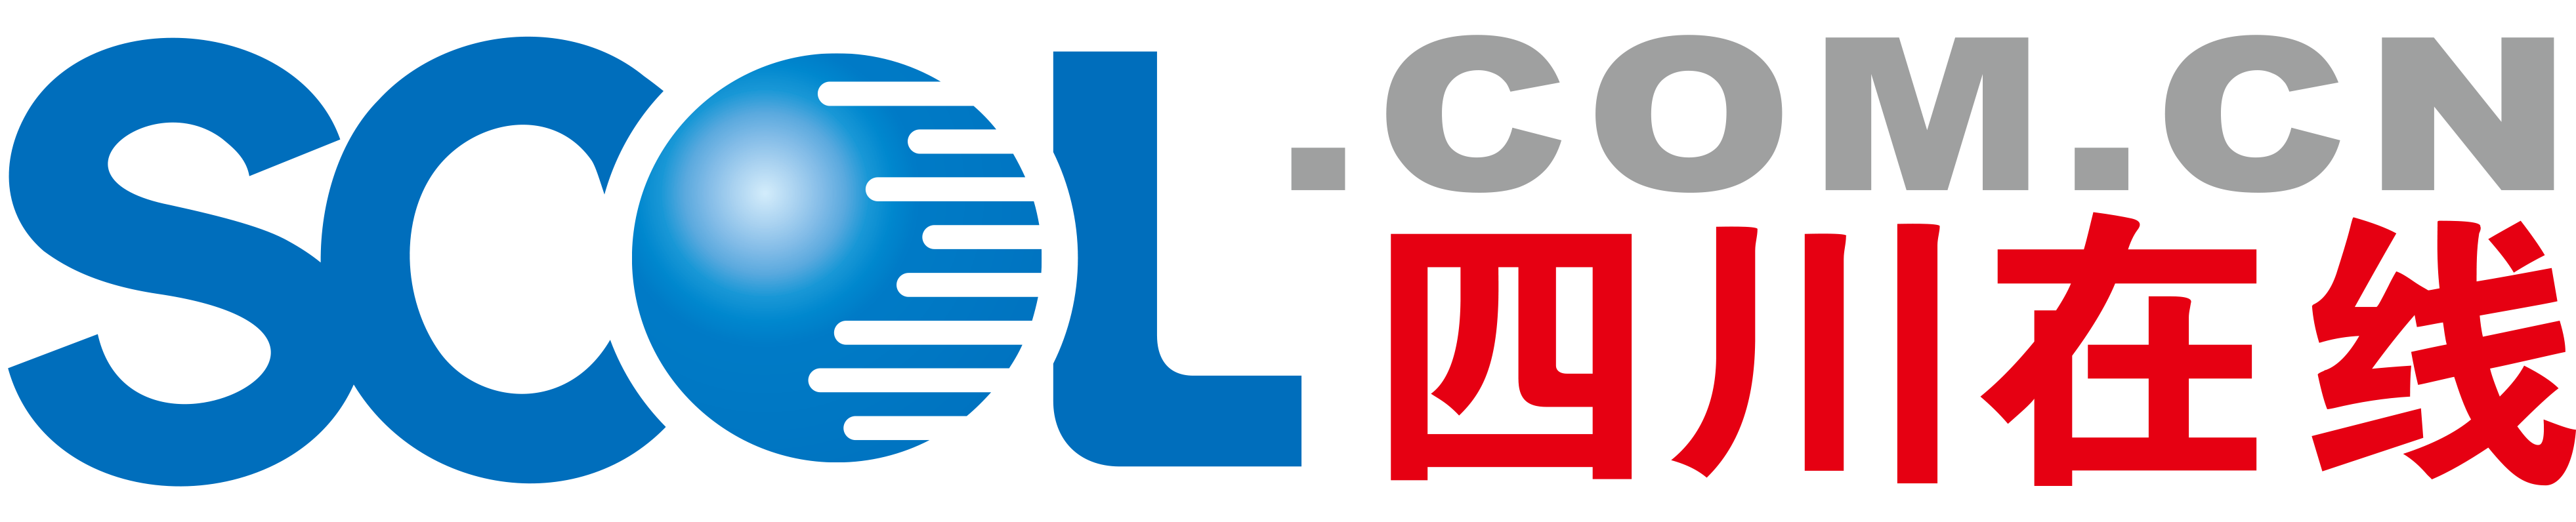 四川在线logo.png